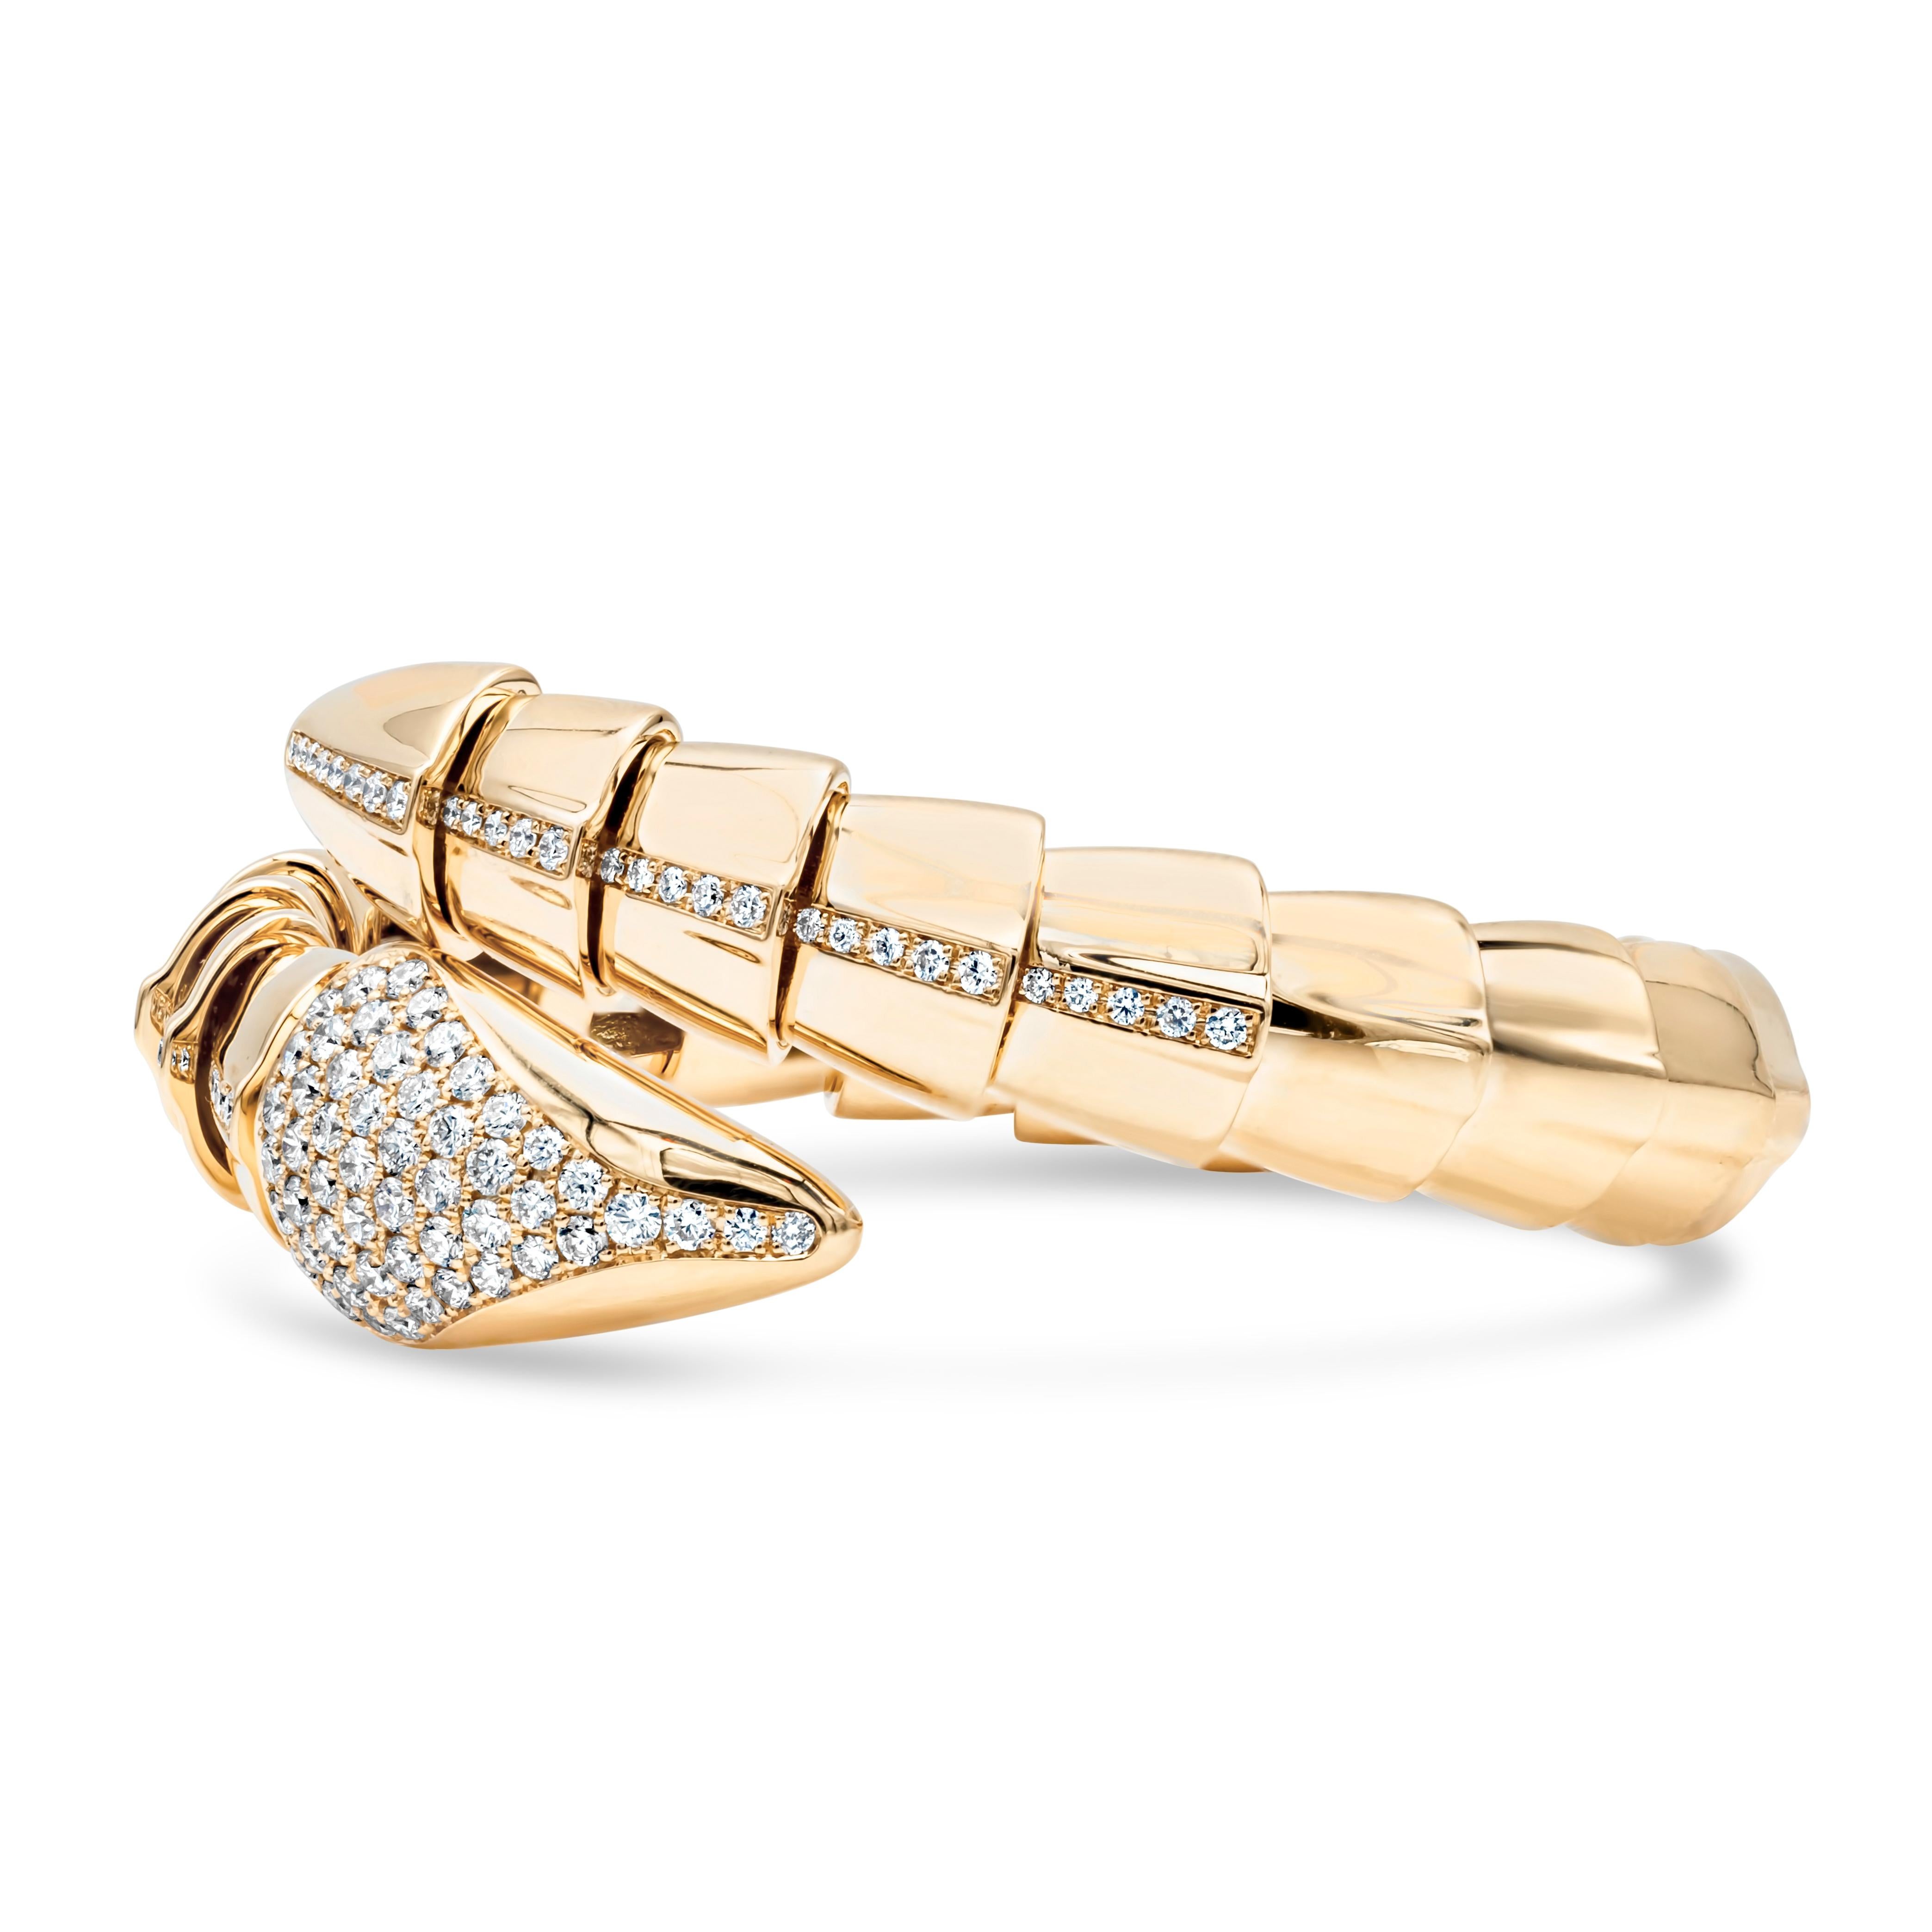 Ce bracelet artistique et riche en couleurs est serti d'un magnifique motif serpentin rehaussé de 100 diamants ronds brillants pesant 1,74 carats, de couleur F et de pureté VS-SI. Parfaitement réalisé en or jaune 18 carats.

